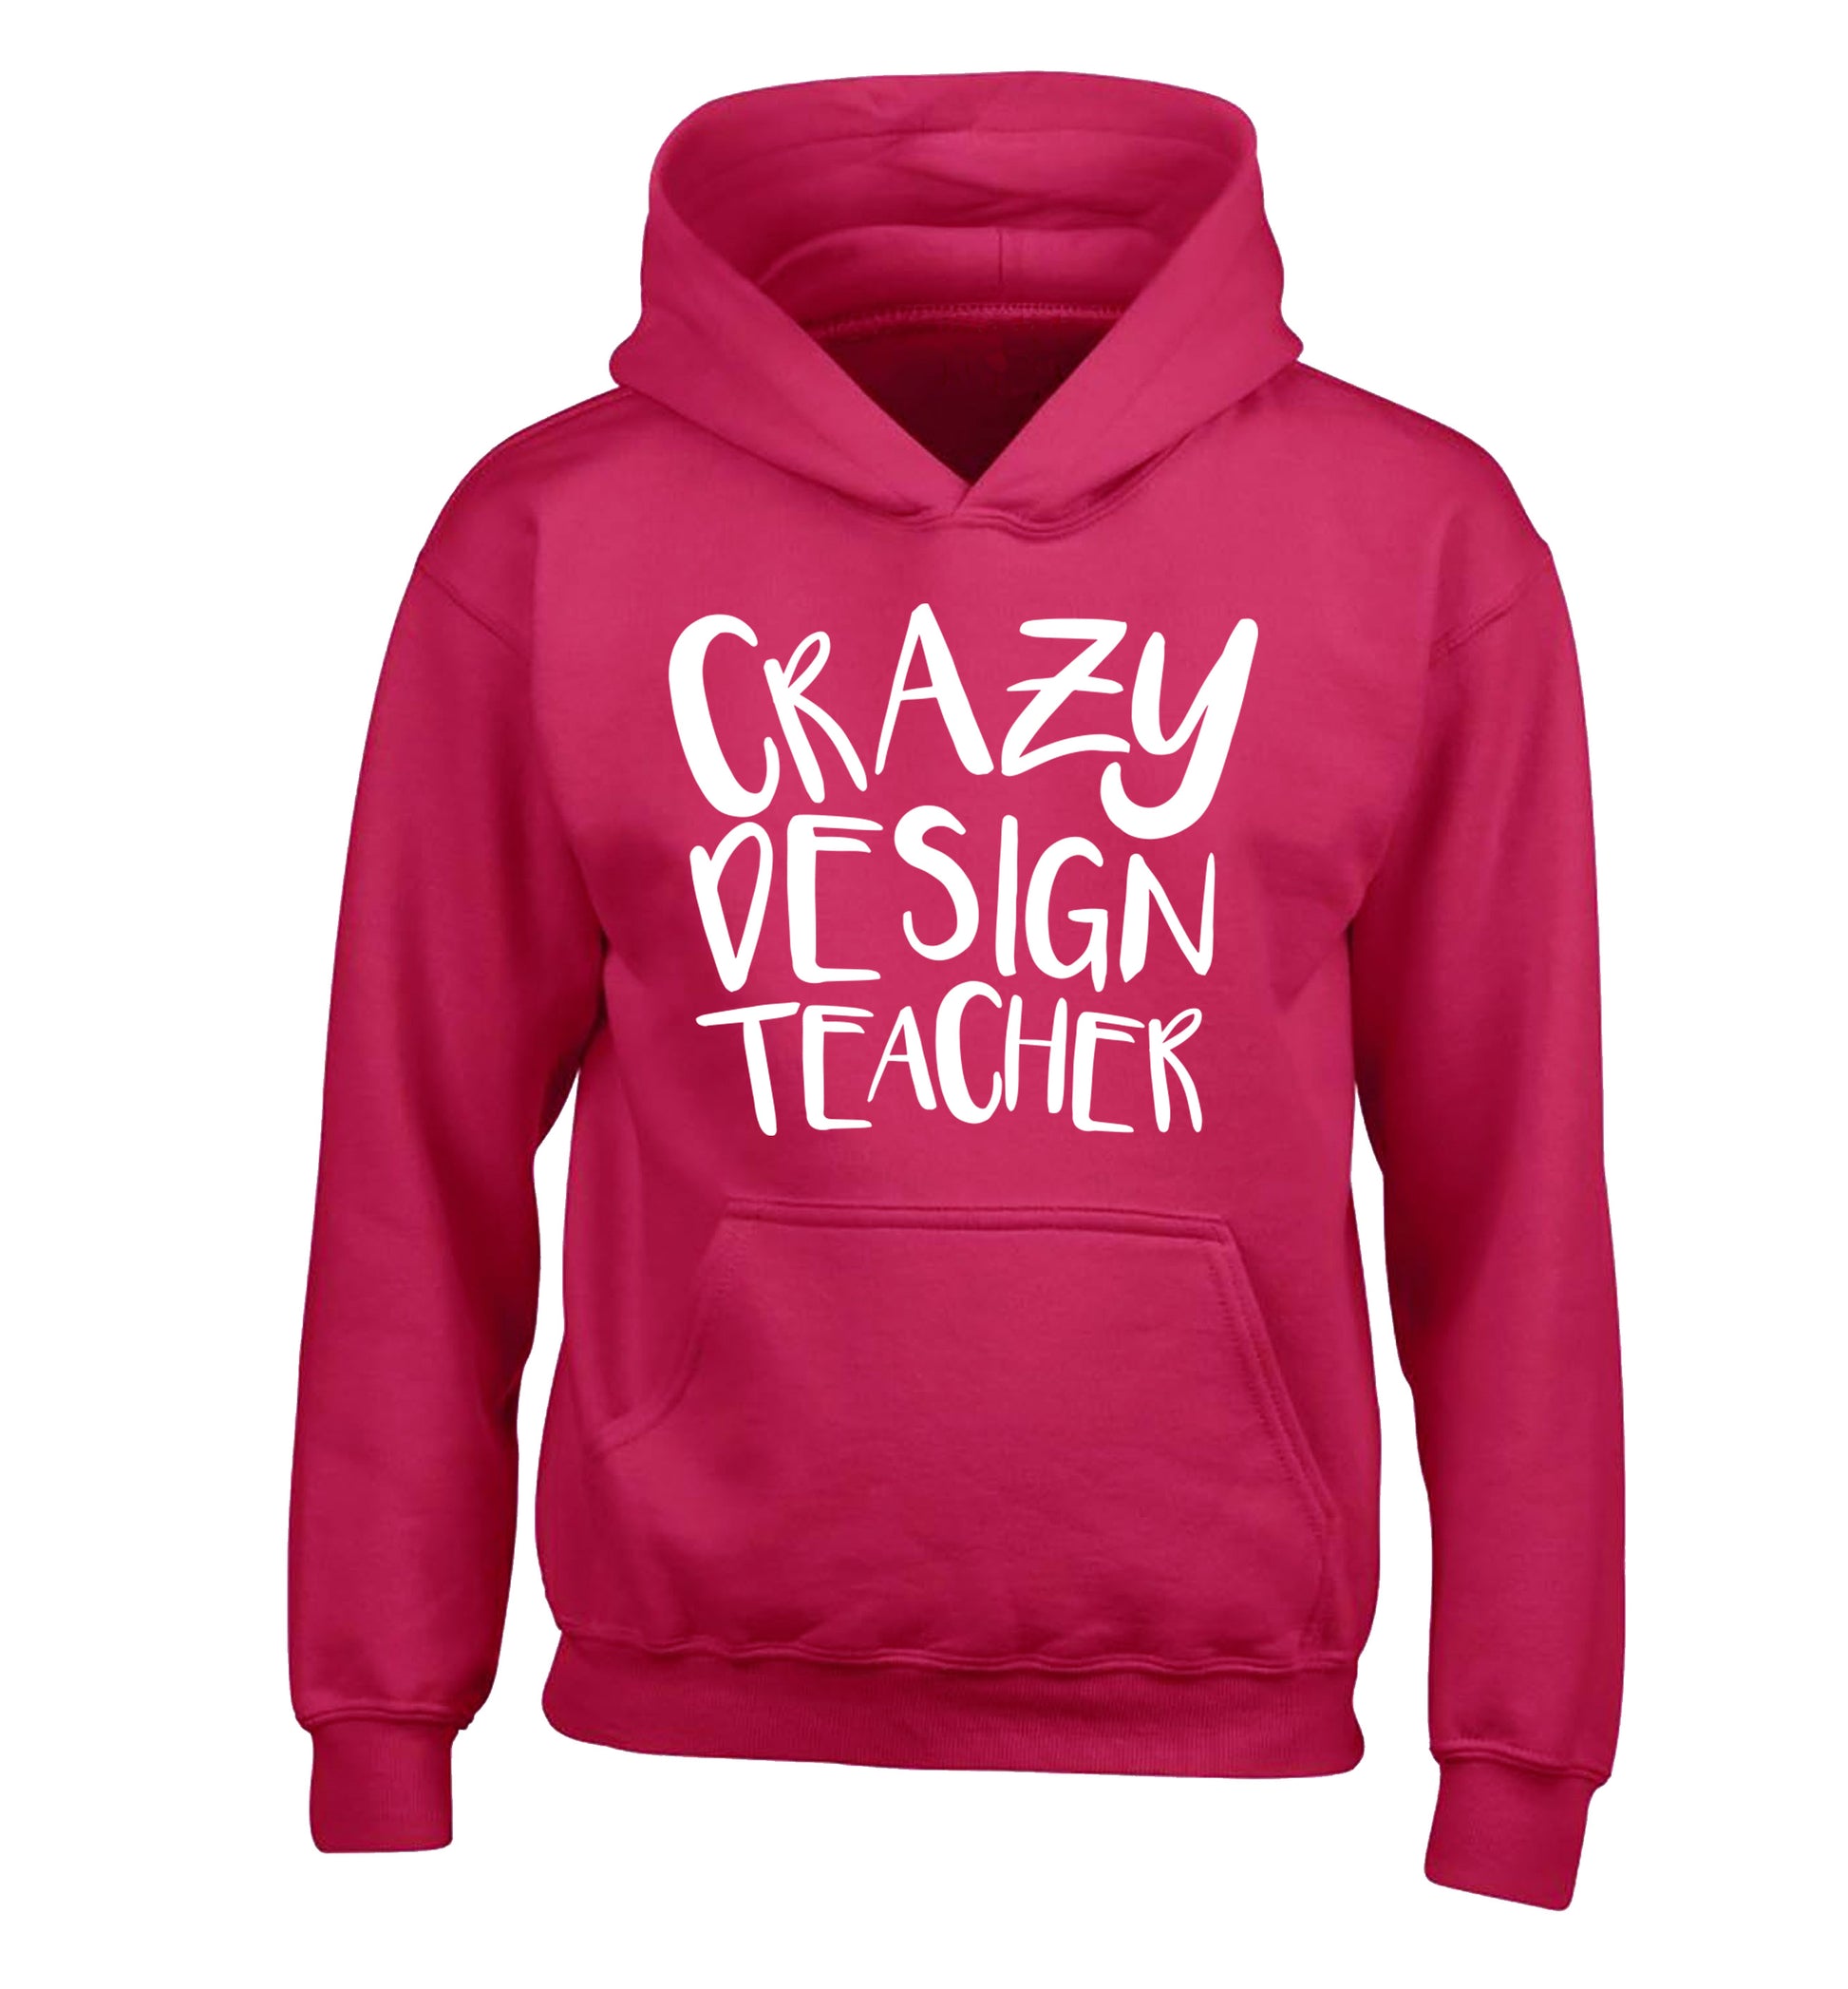 Crazy design teacher children's pink hoodie 12-13 Years